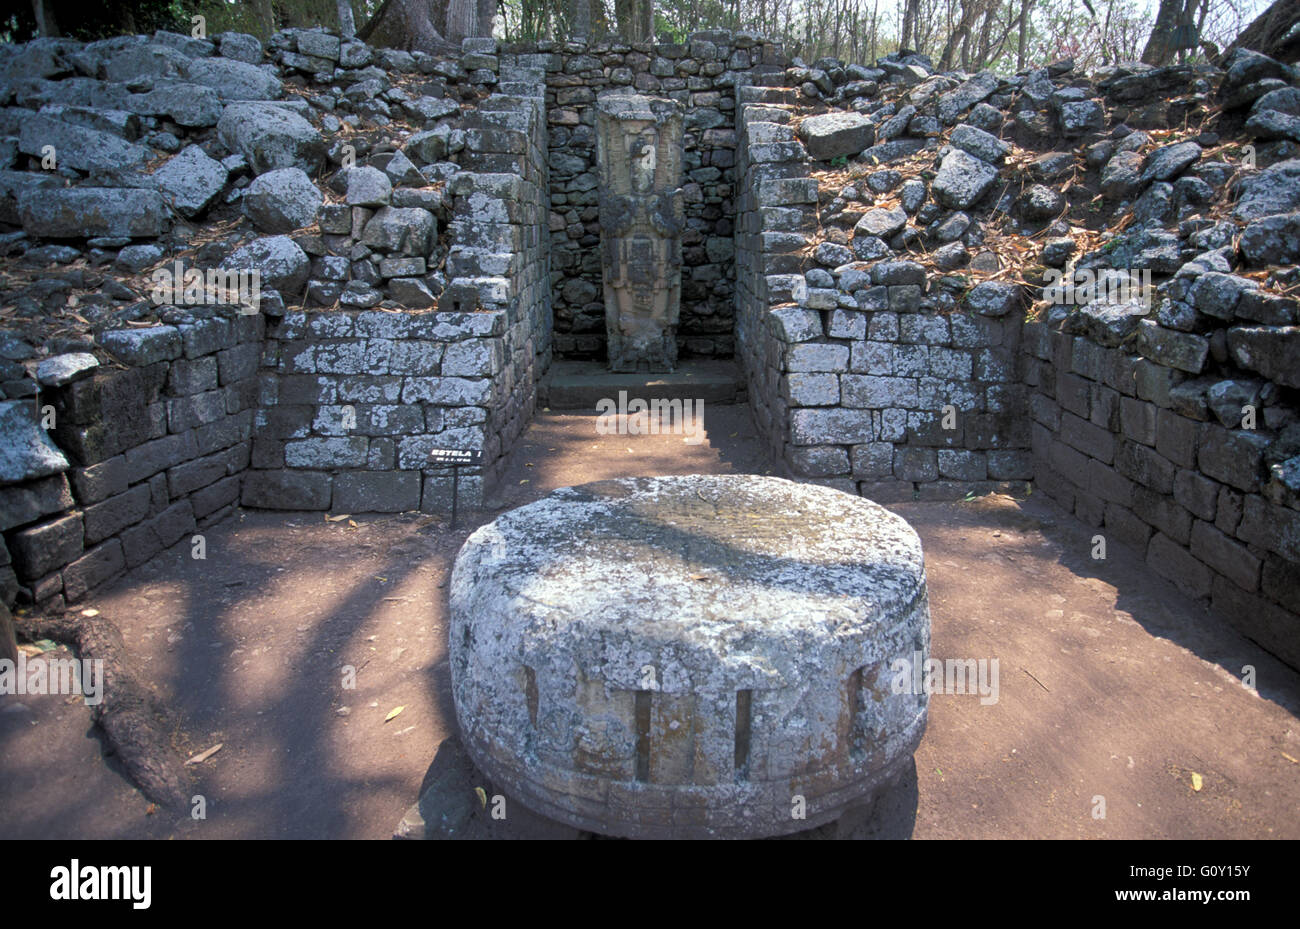 La pierre de sacrifice humain, les ruines de Copan, un site archéologique de la civilisation Maya à Copan, Honduras Ministère Banque D'Images